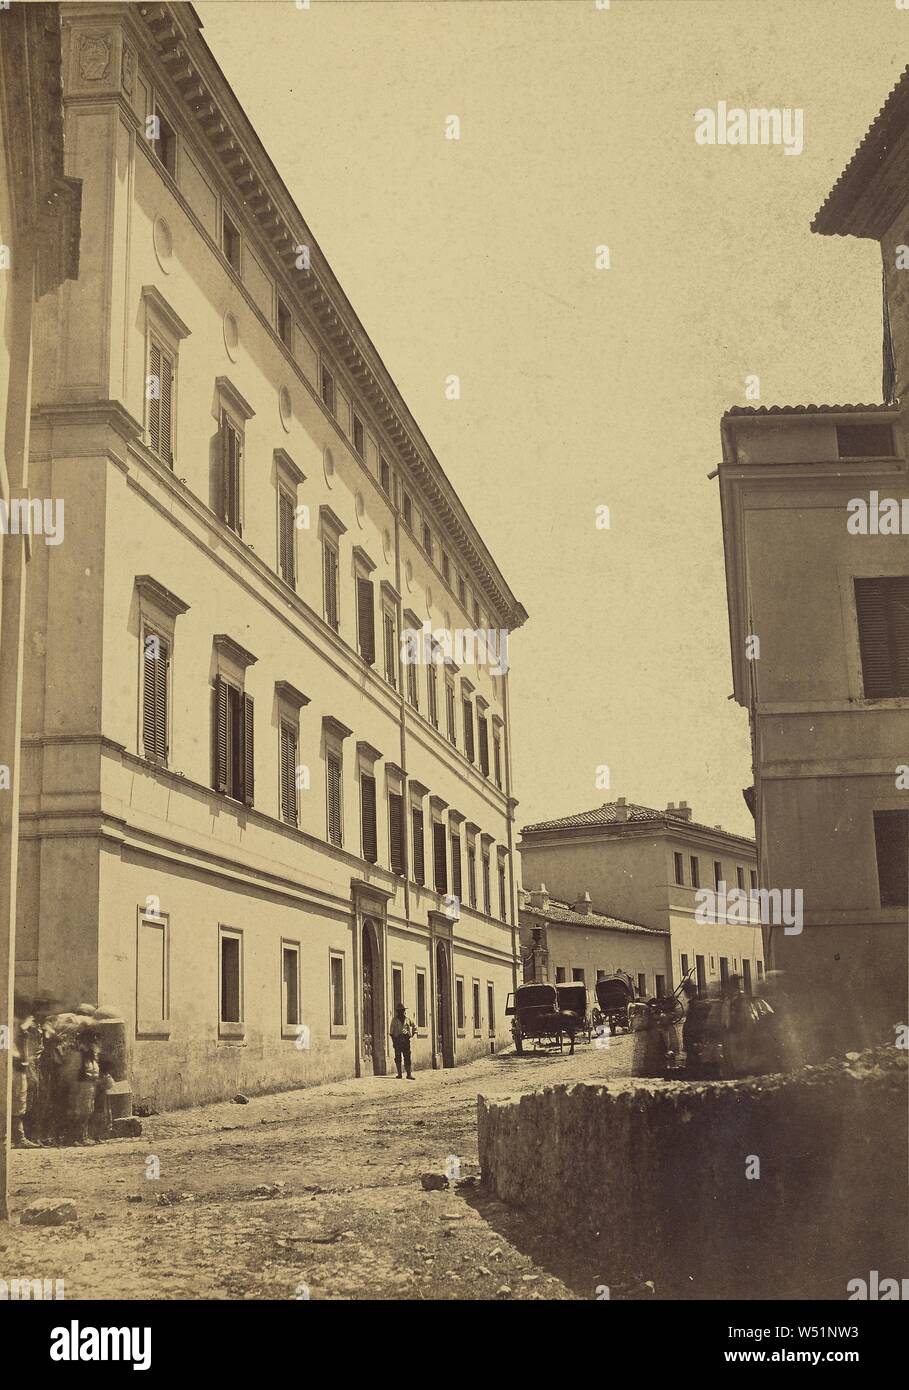 Ceccano, Altobelli & Molins (Italian, active until 1865), Ceccano, Italy, 1858–1865, Albumen silver print, 36.1 × 25.4 cm (14 3/16 × 10 in Stock Photo